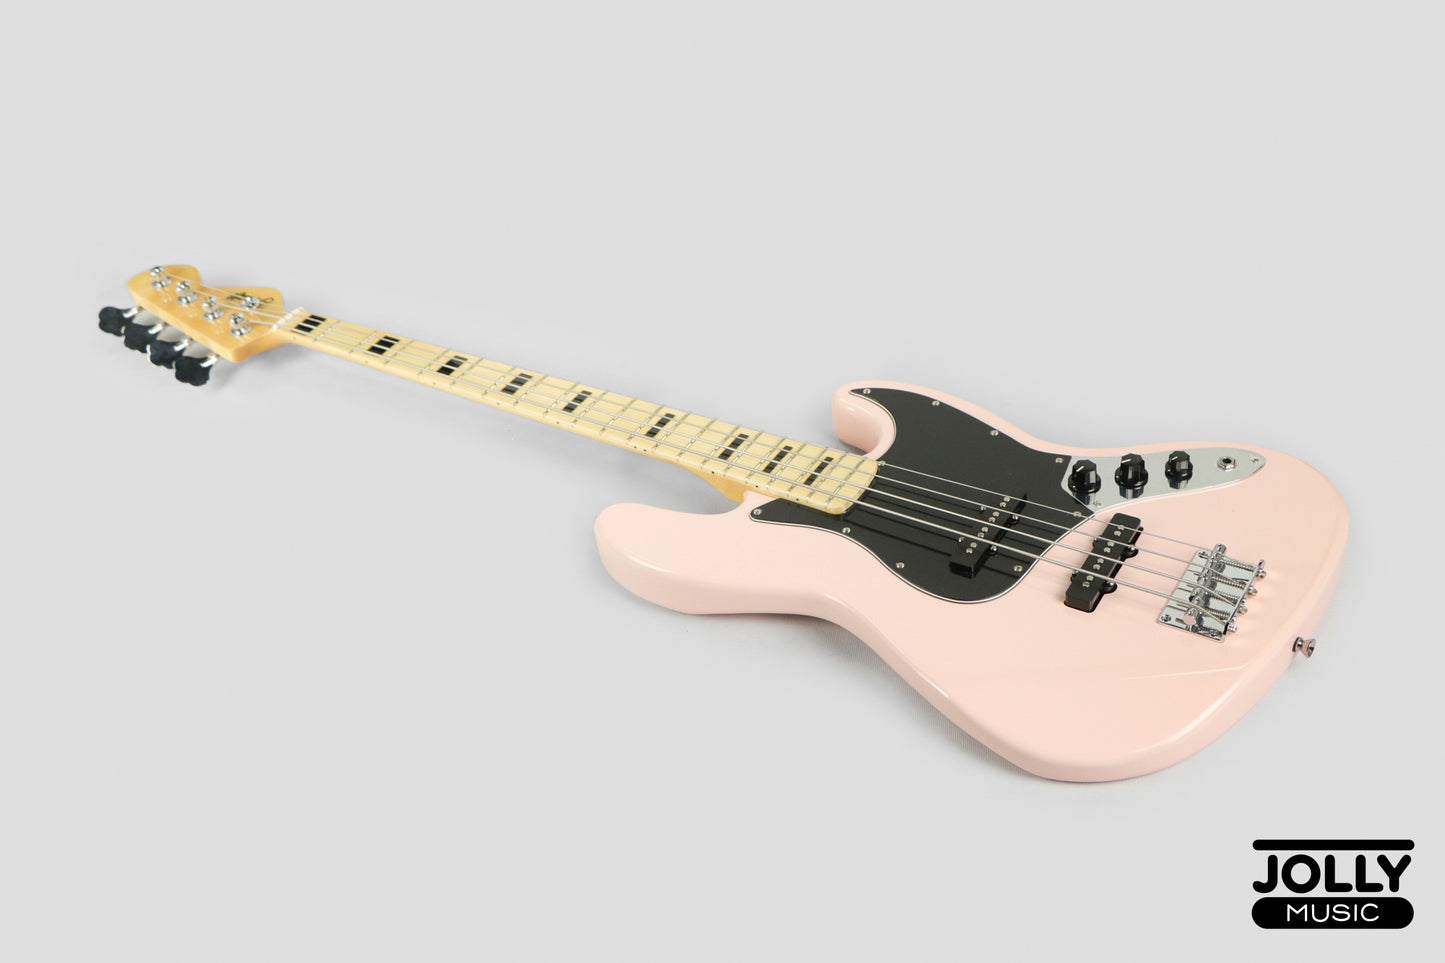 JCraft JB-1 J-Offset 4-String Bass Guitar with Gigbag - Shell Pink